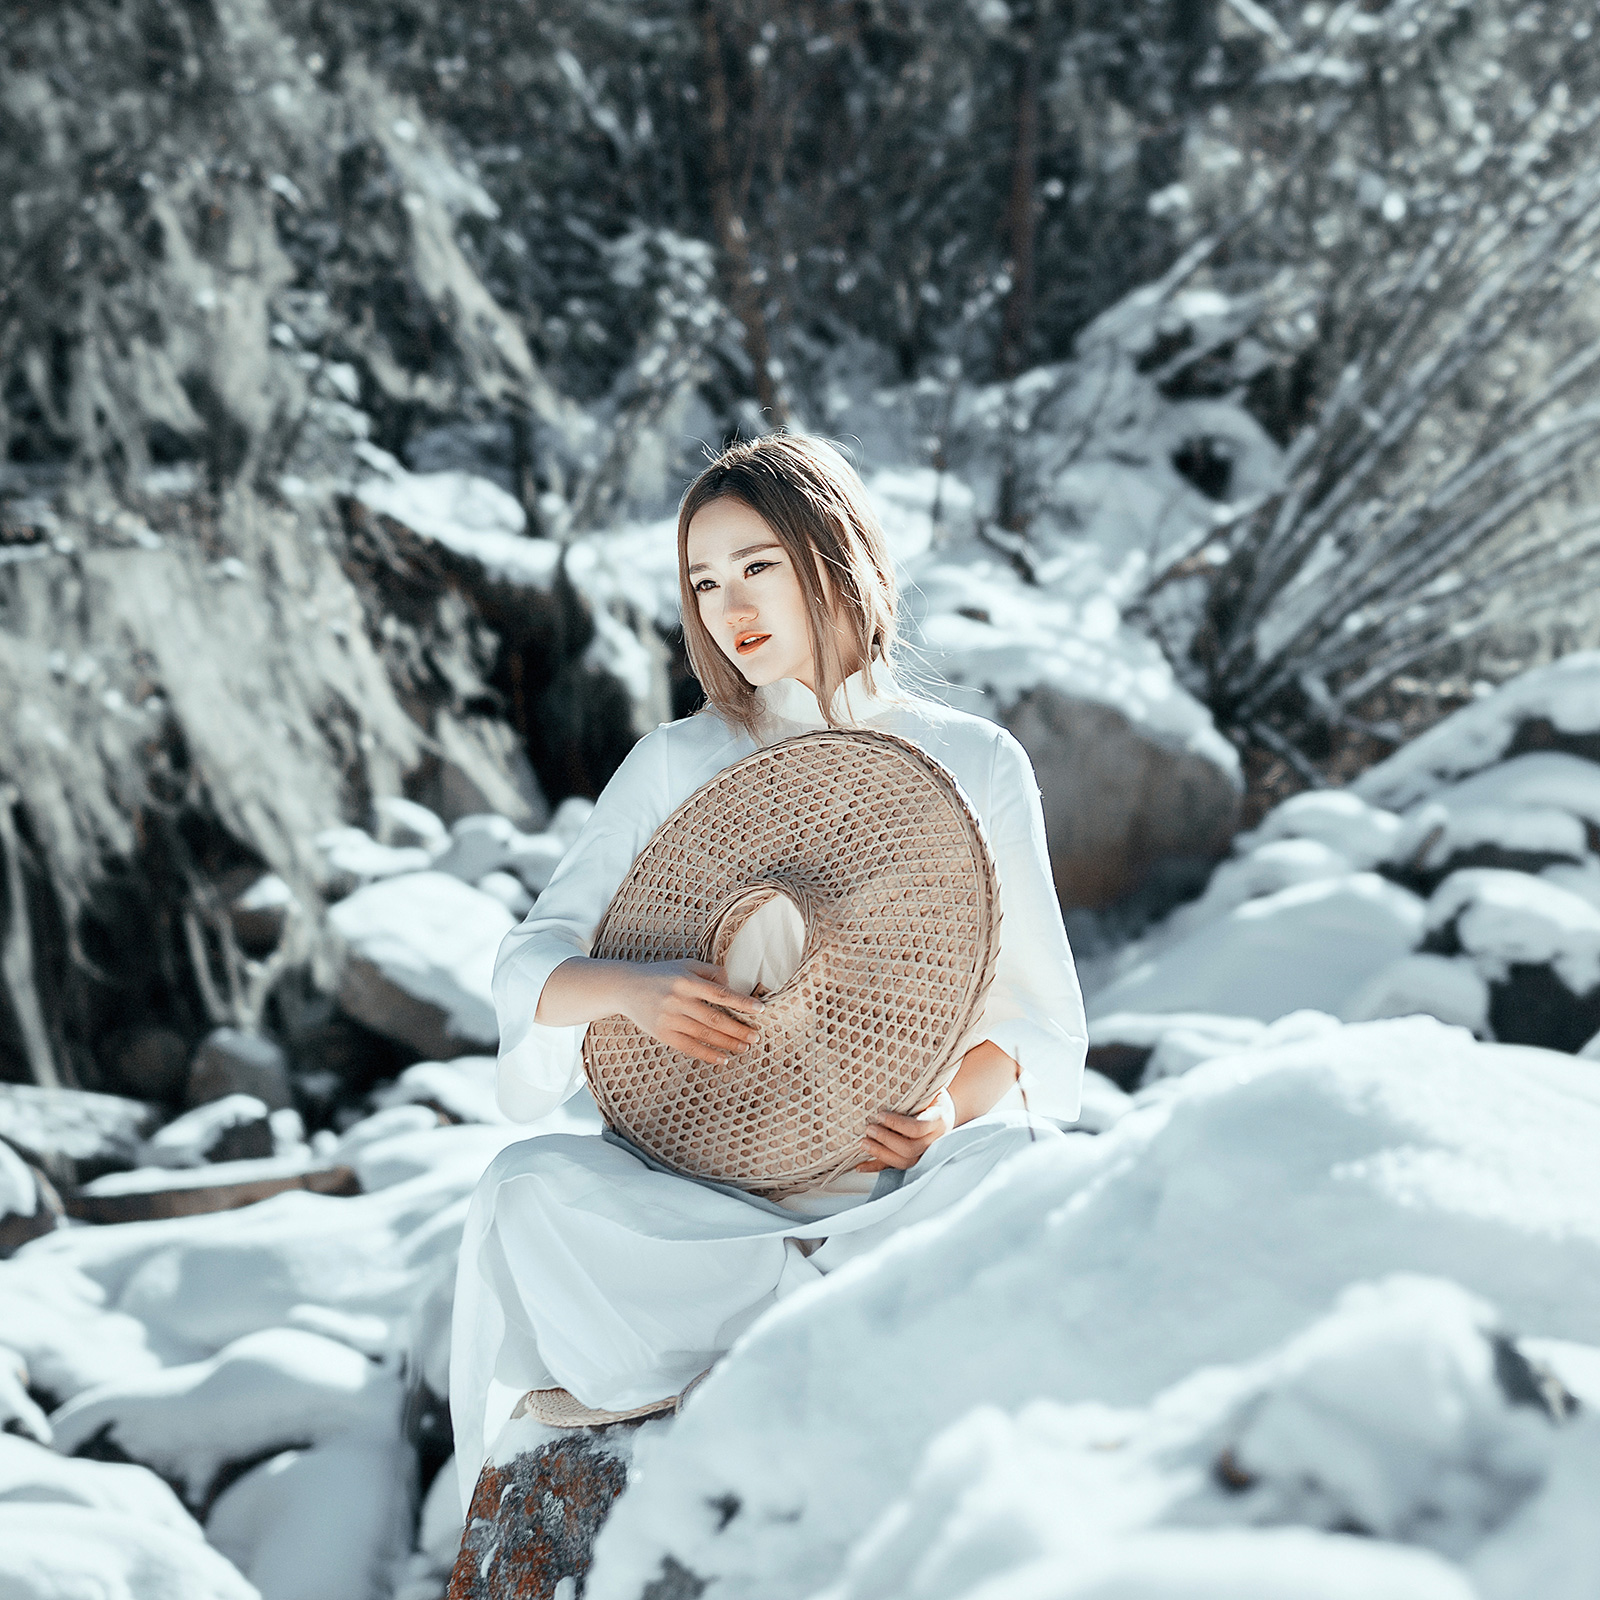 古装美女山涧雪景写真 不染世俗的美